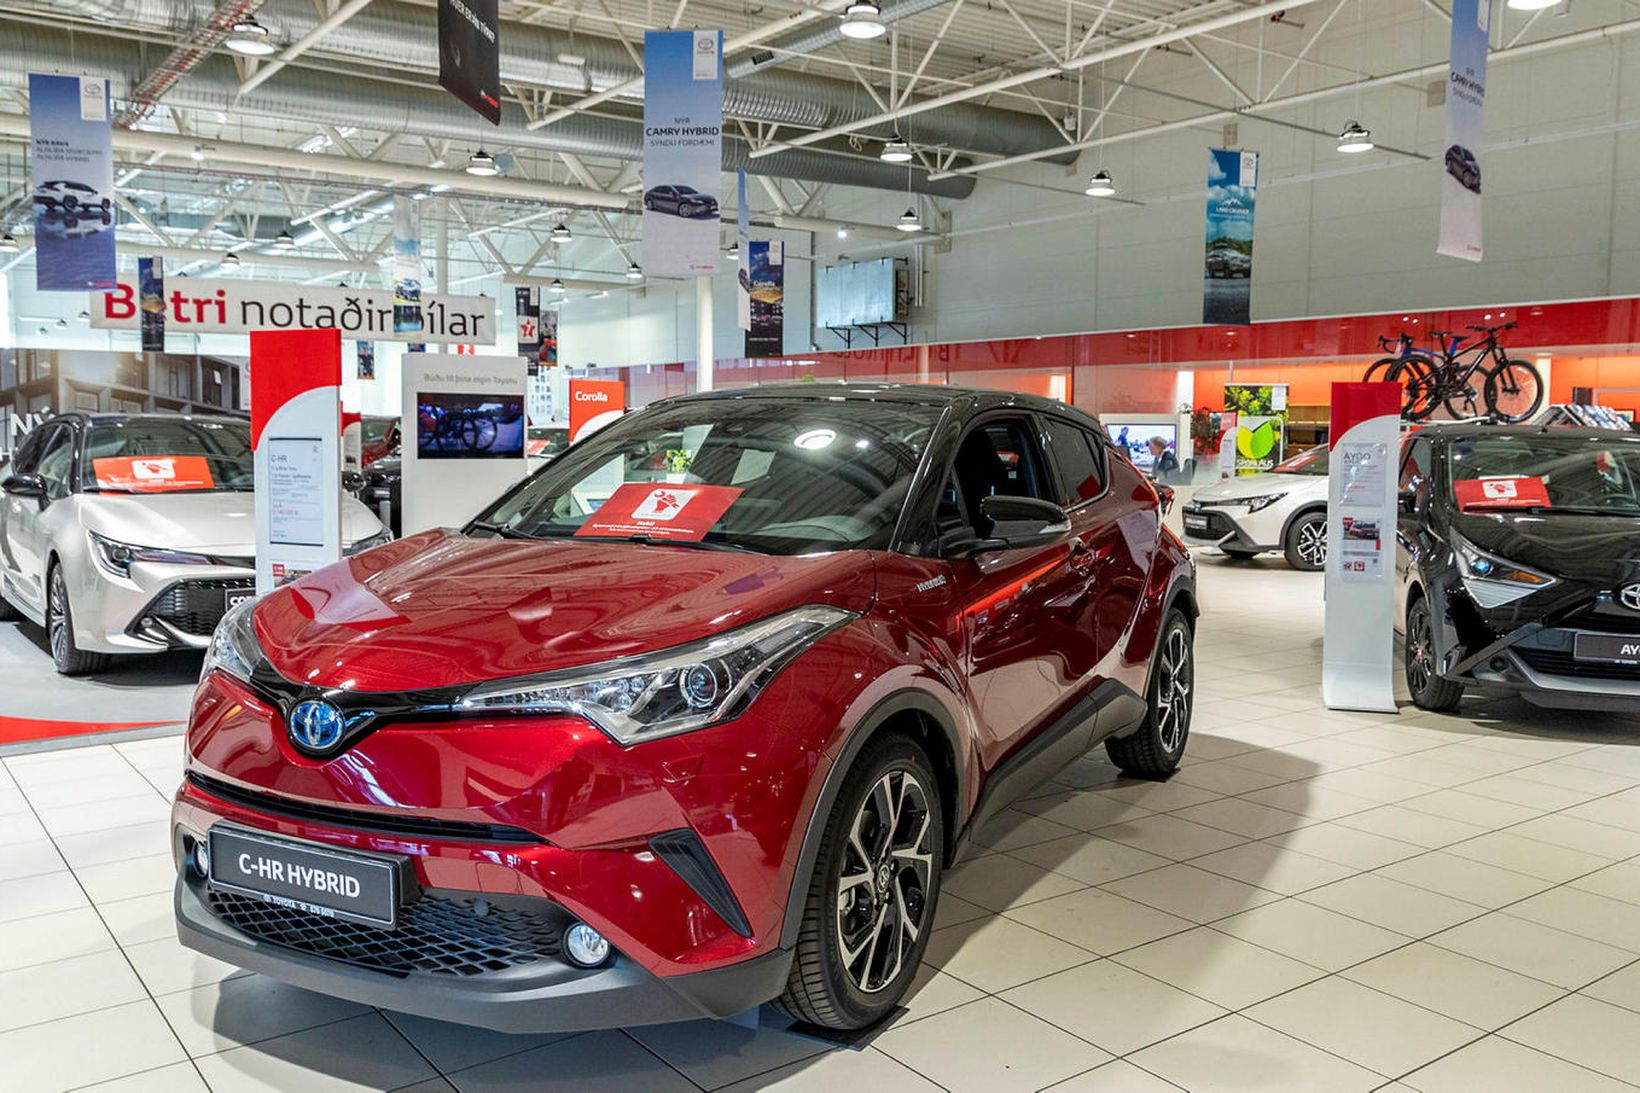 Toyota hefur lengi haft sterka markaðsstöðu á Íslandi.